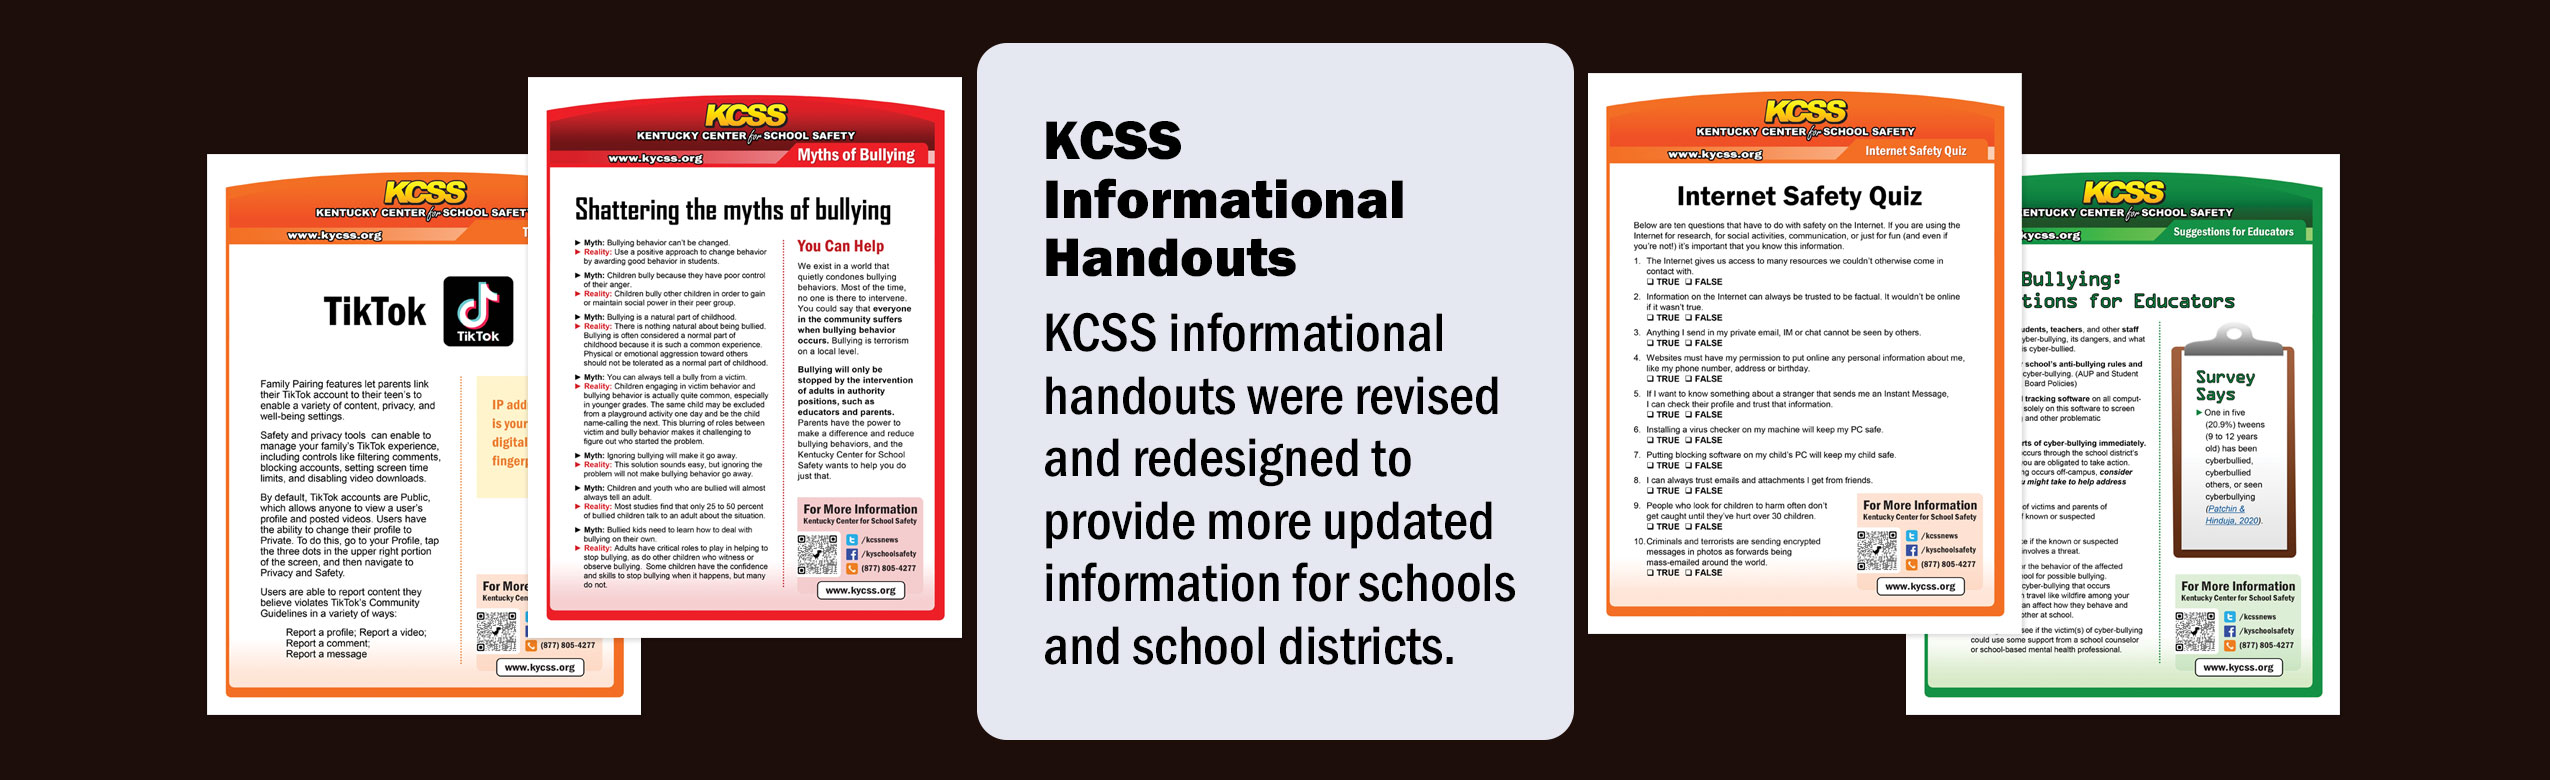 KCSS Website Slider new handouts